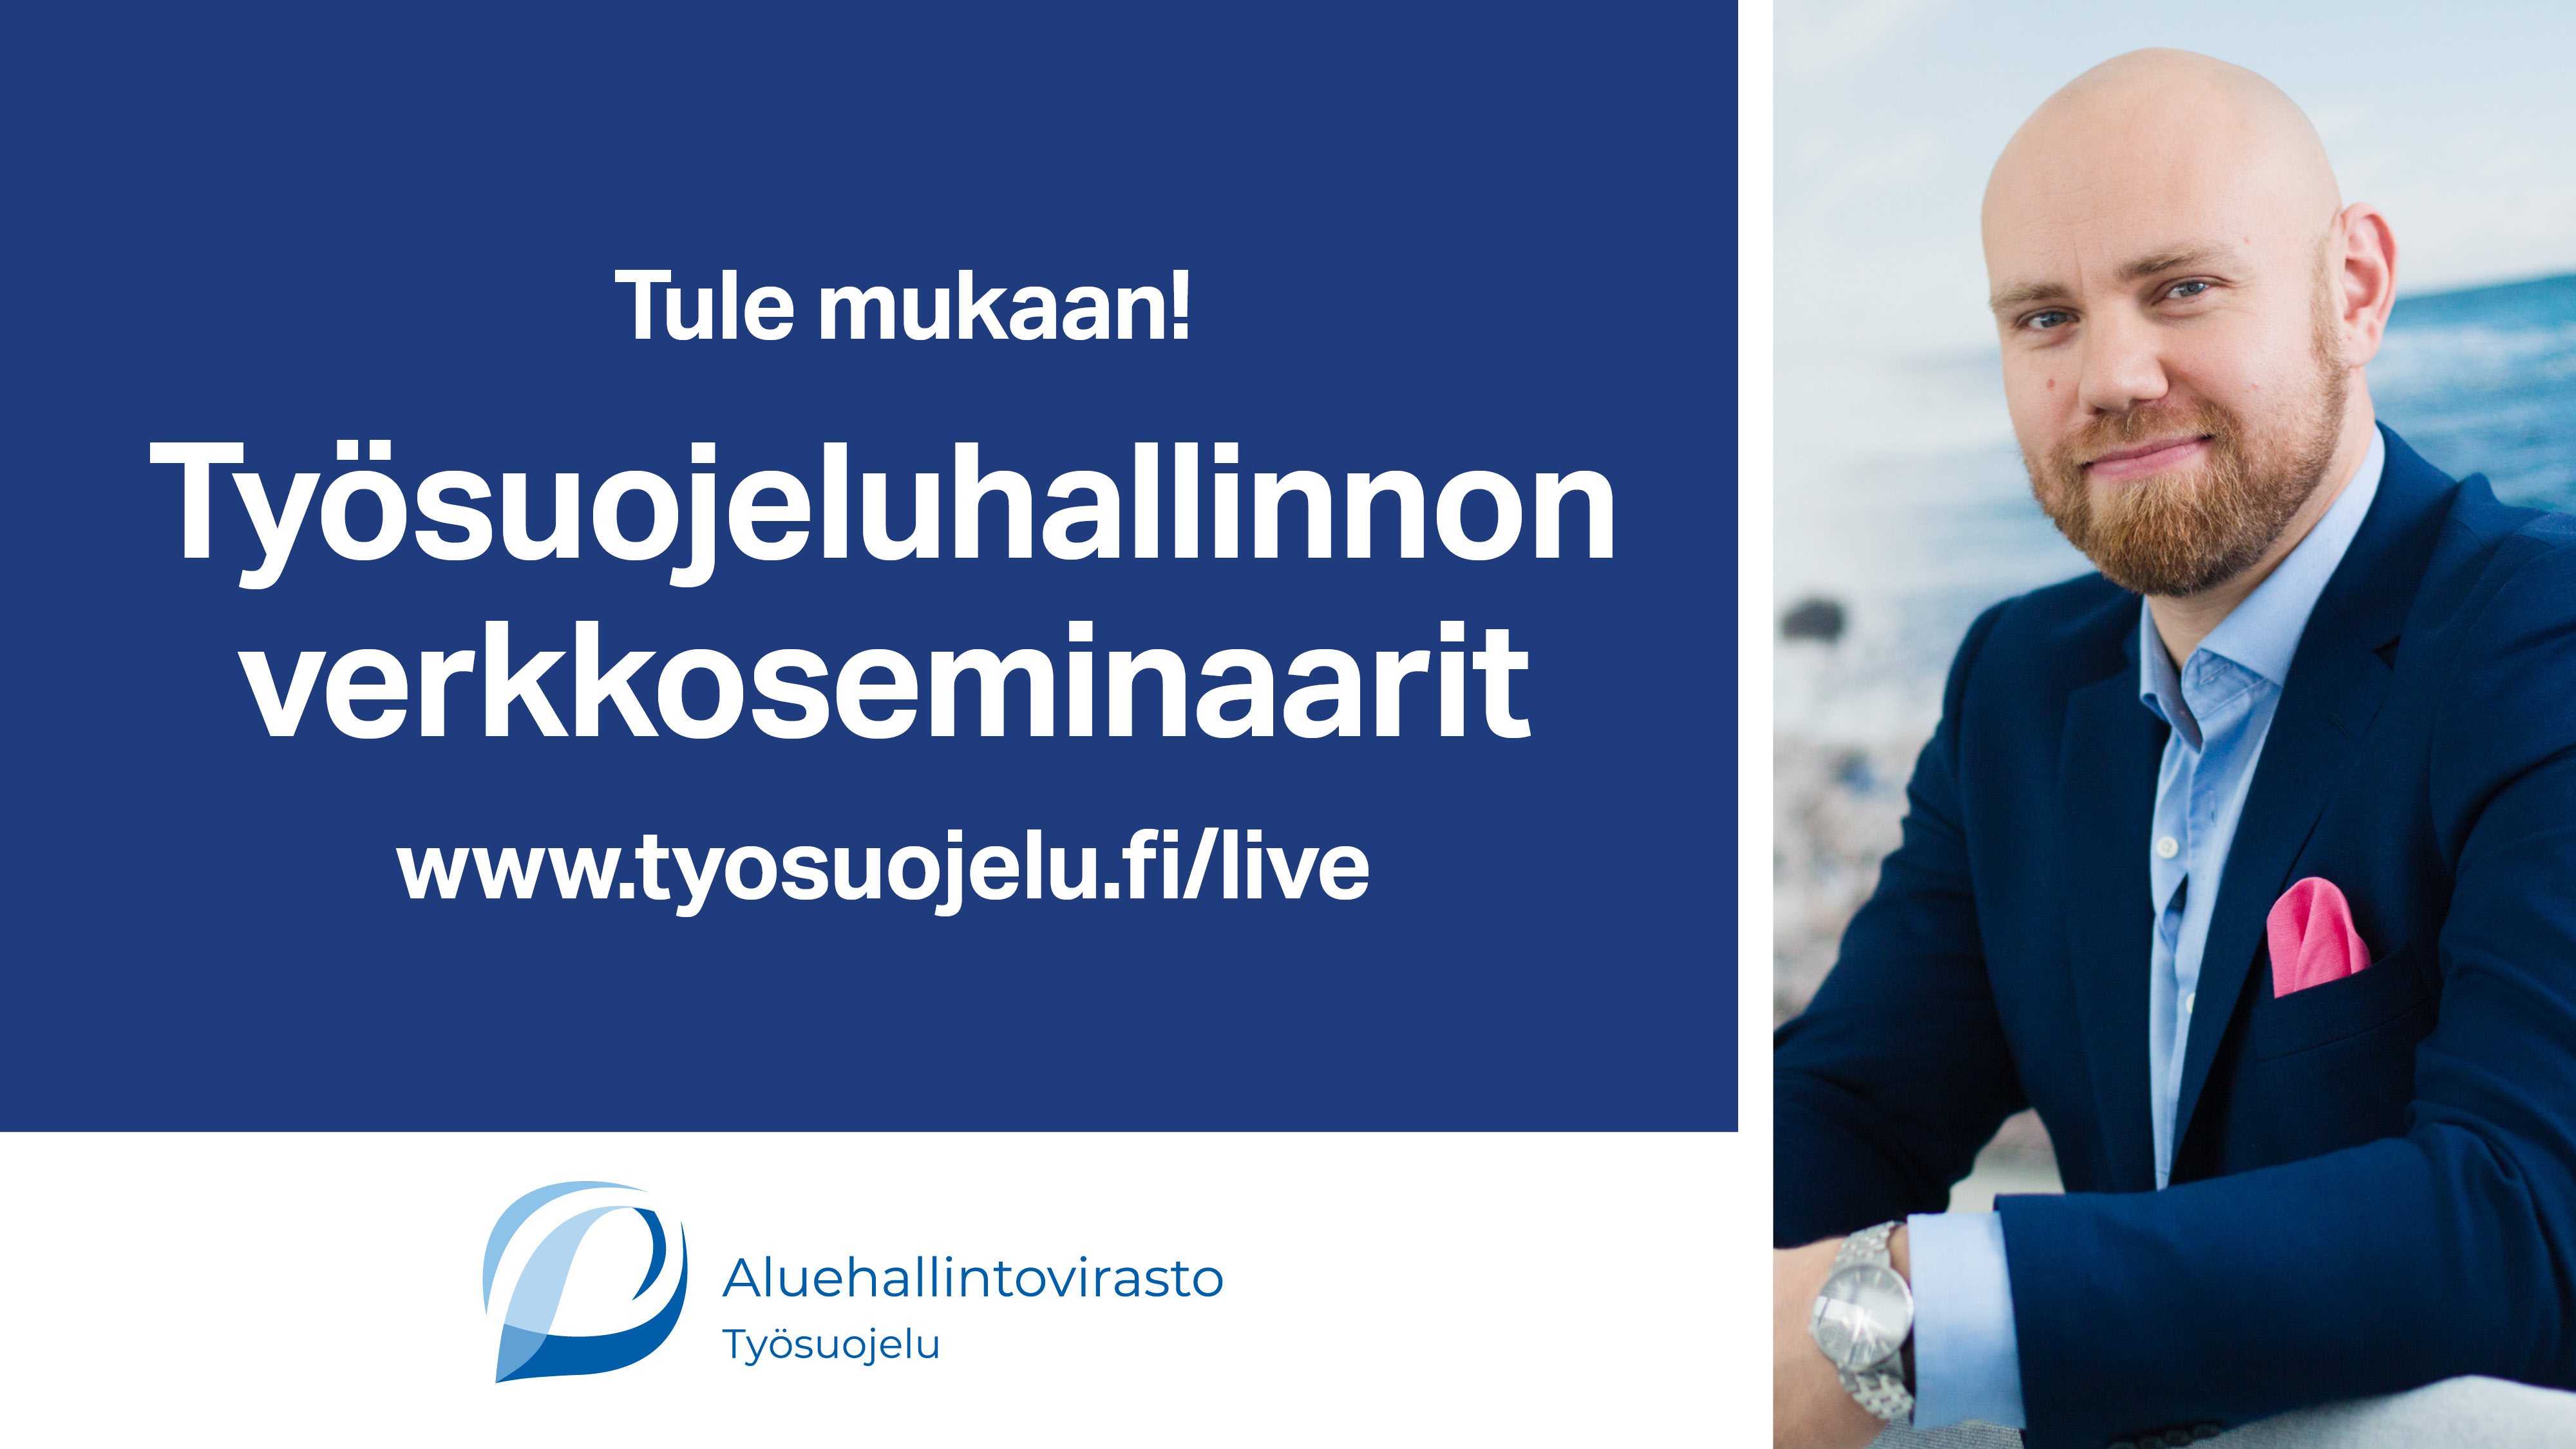 Tule mukaan! Työsuojeluhallinnon verkkoseminaarit www.tyosuojelu.fi/live